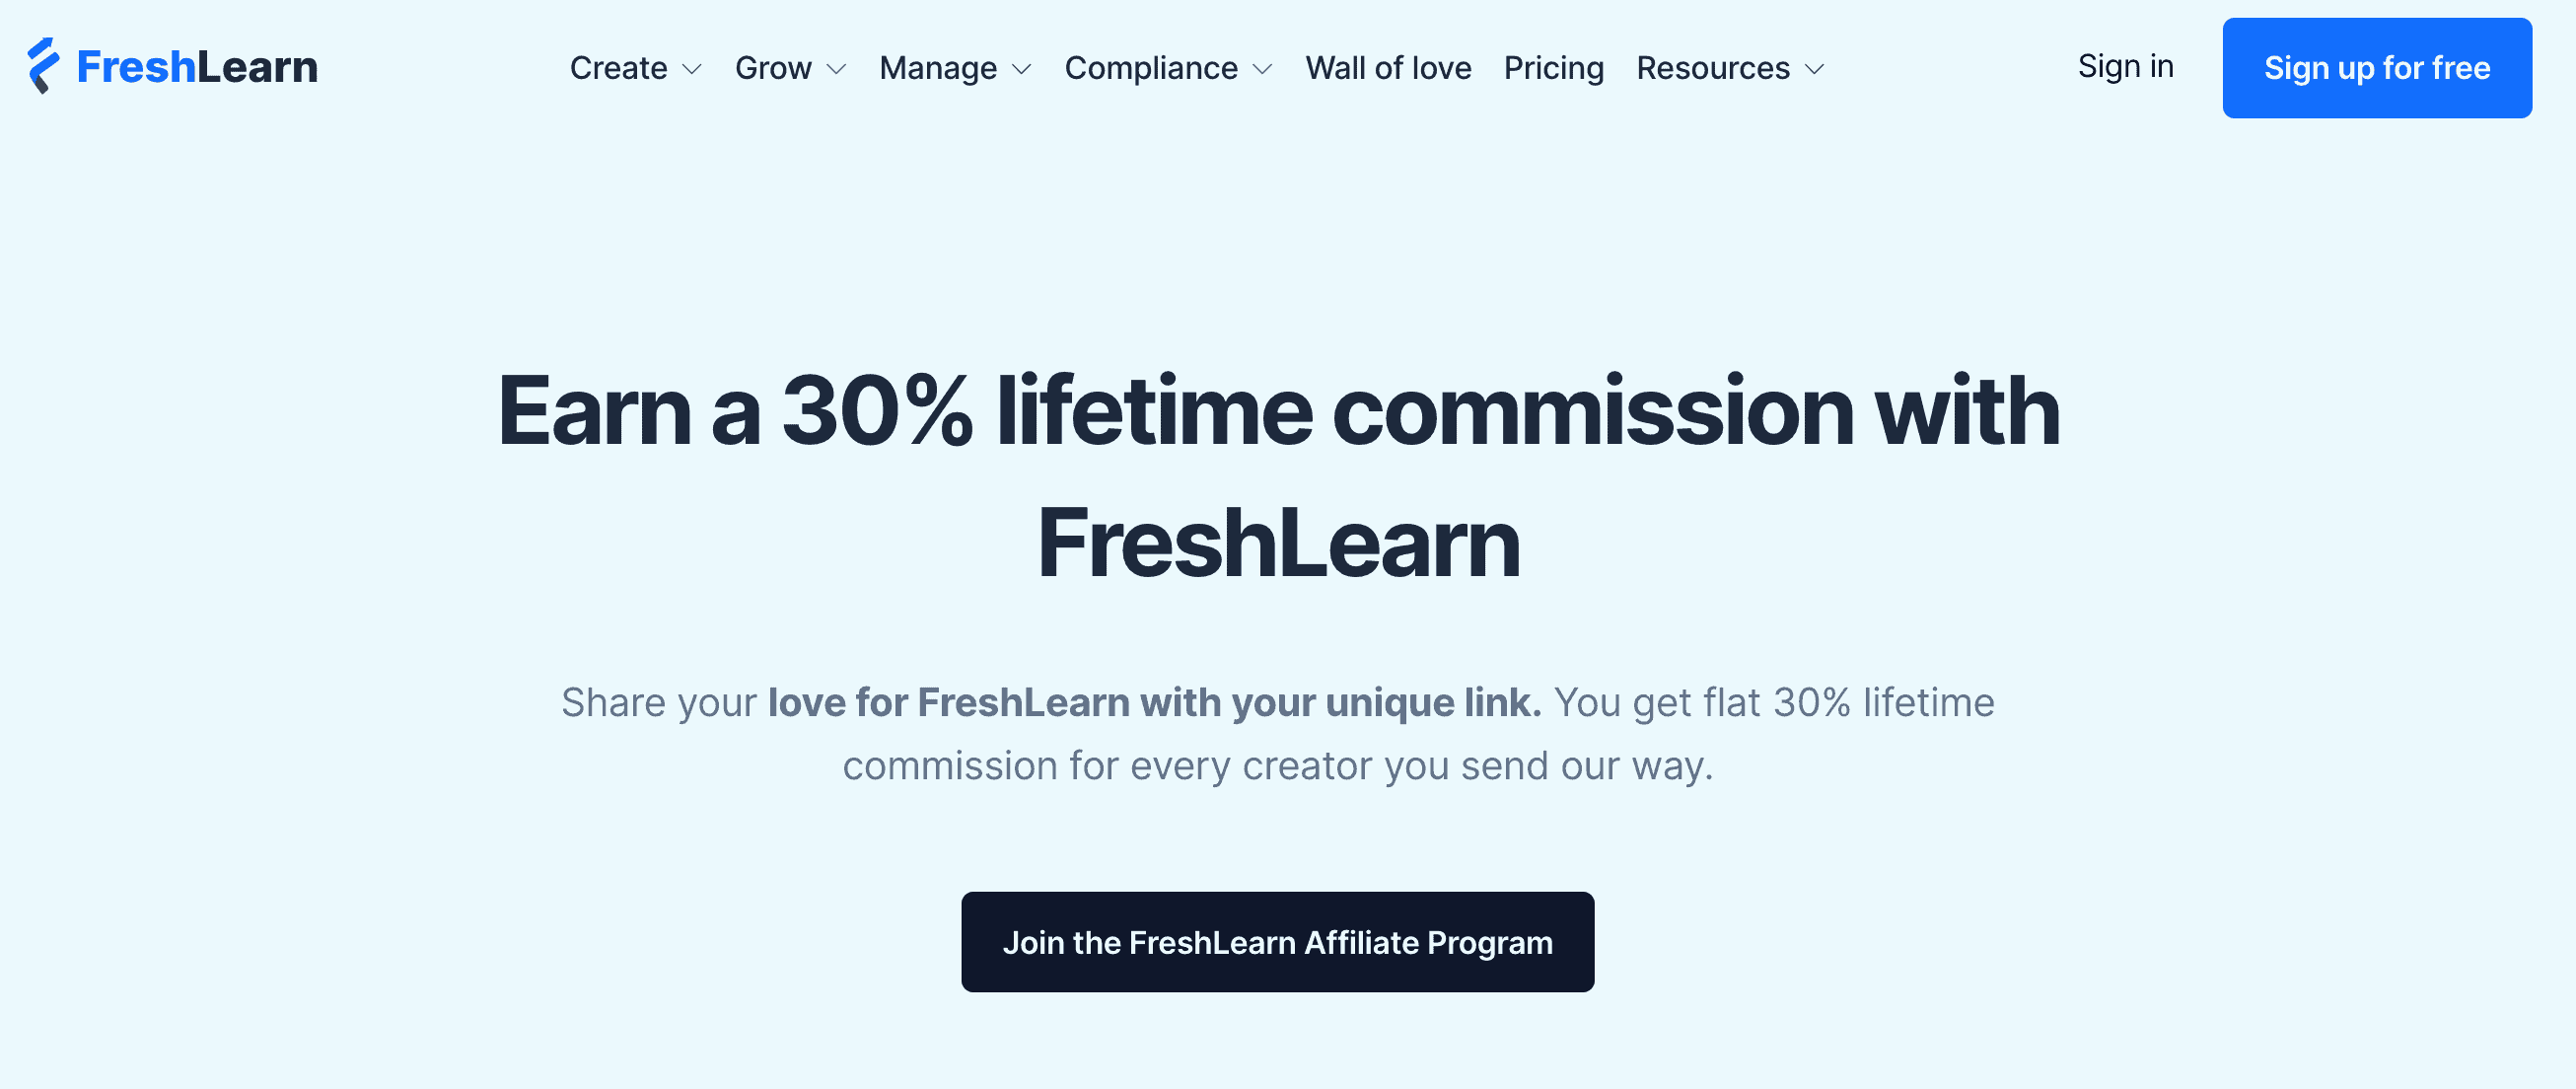 Freshlearn affiliate marketing program